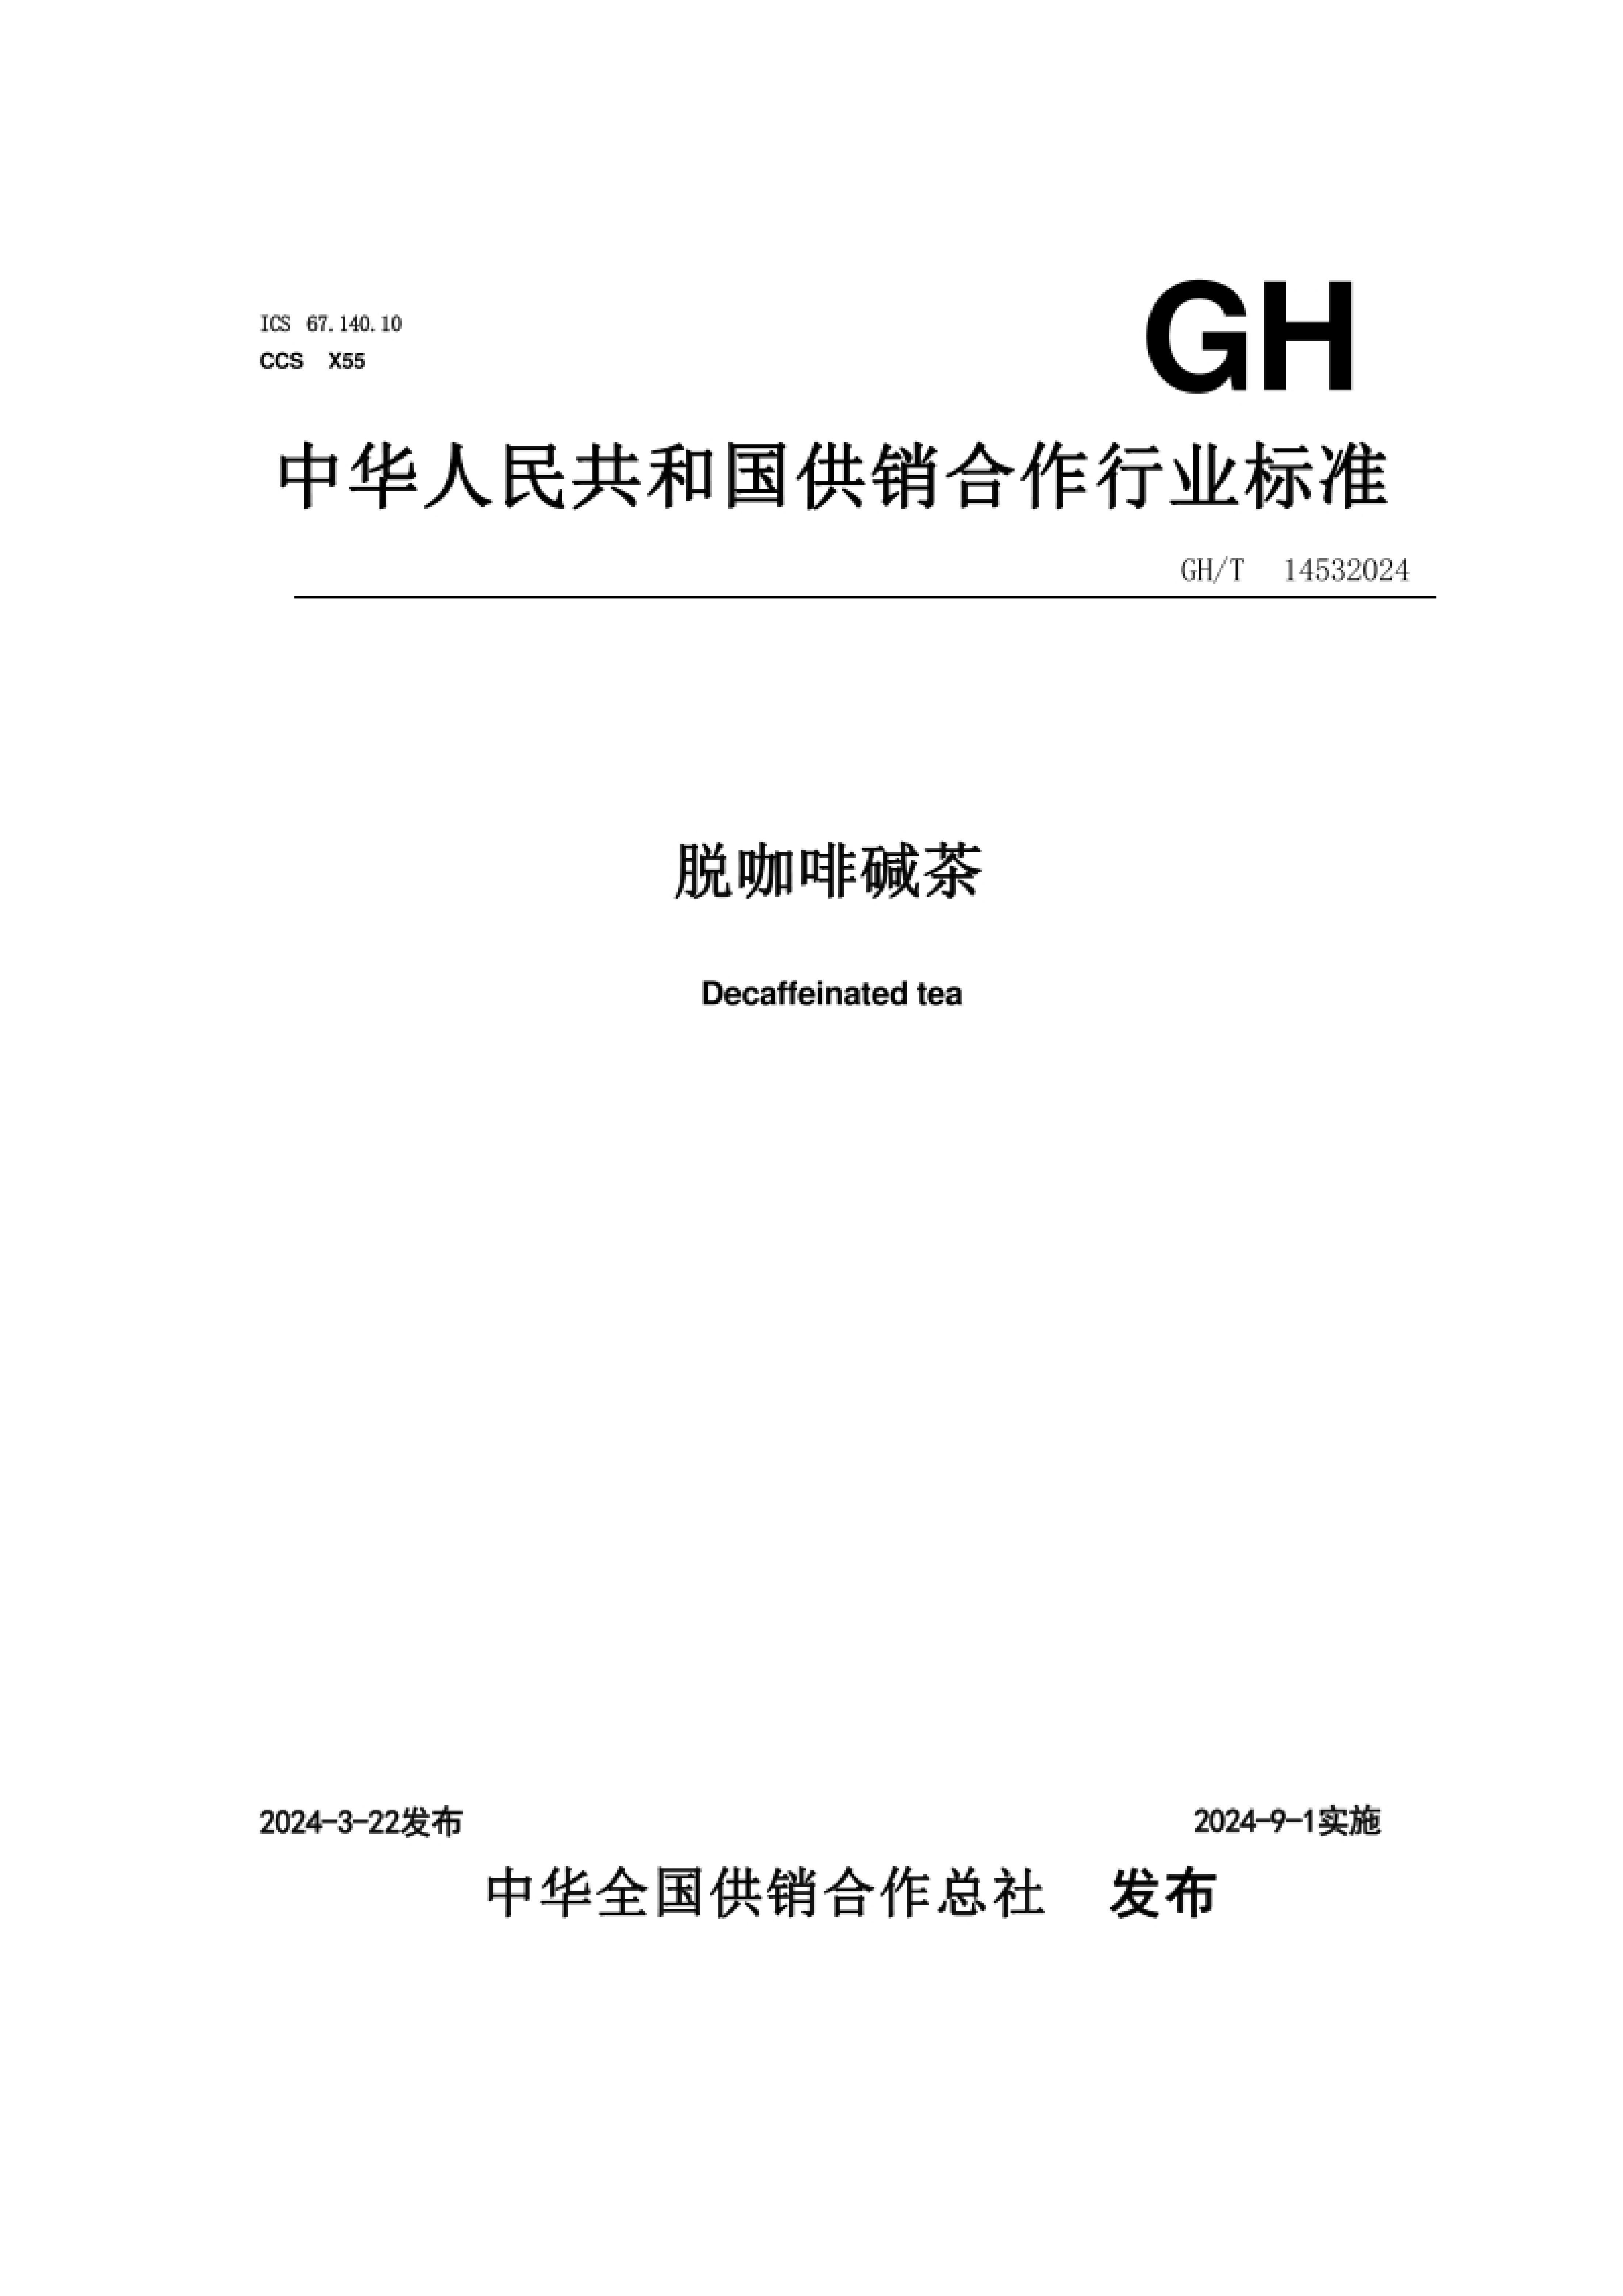 GH_T 1453-2024 ѿȼ.pdf1ҳ